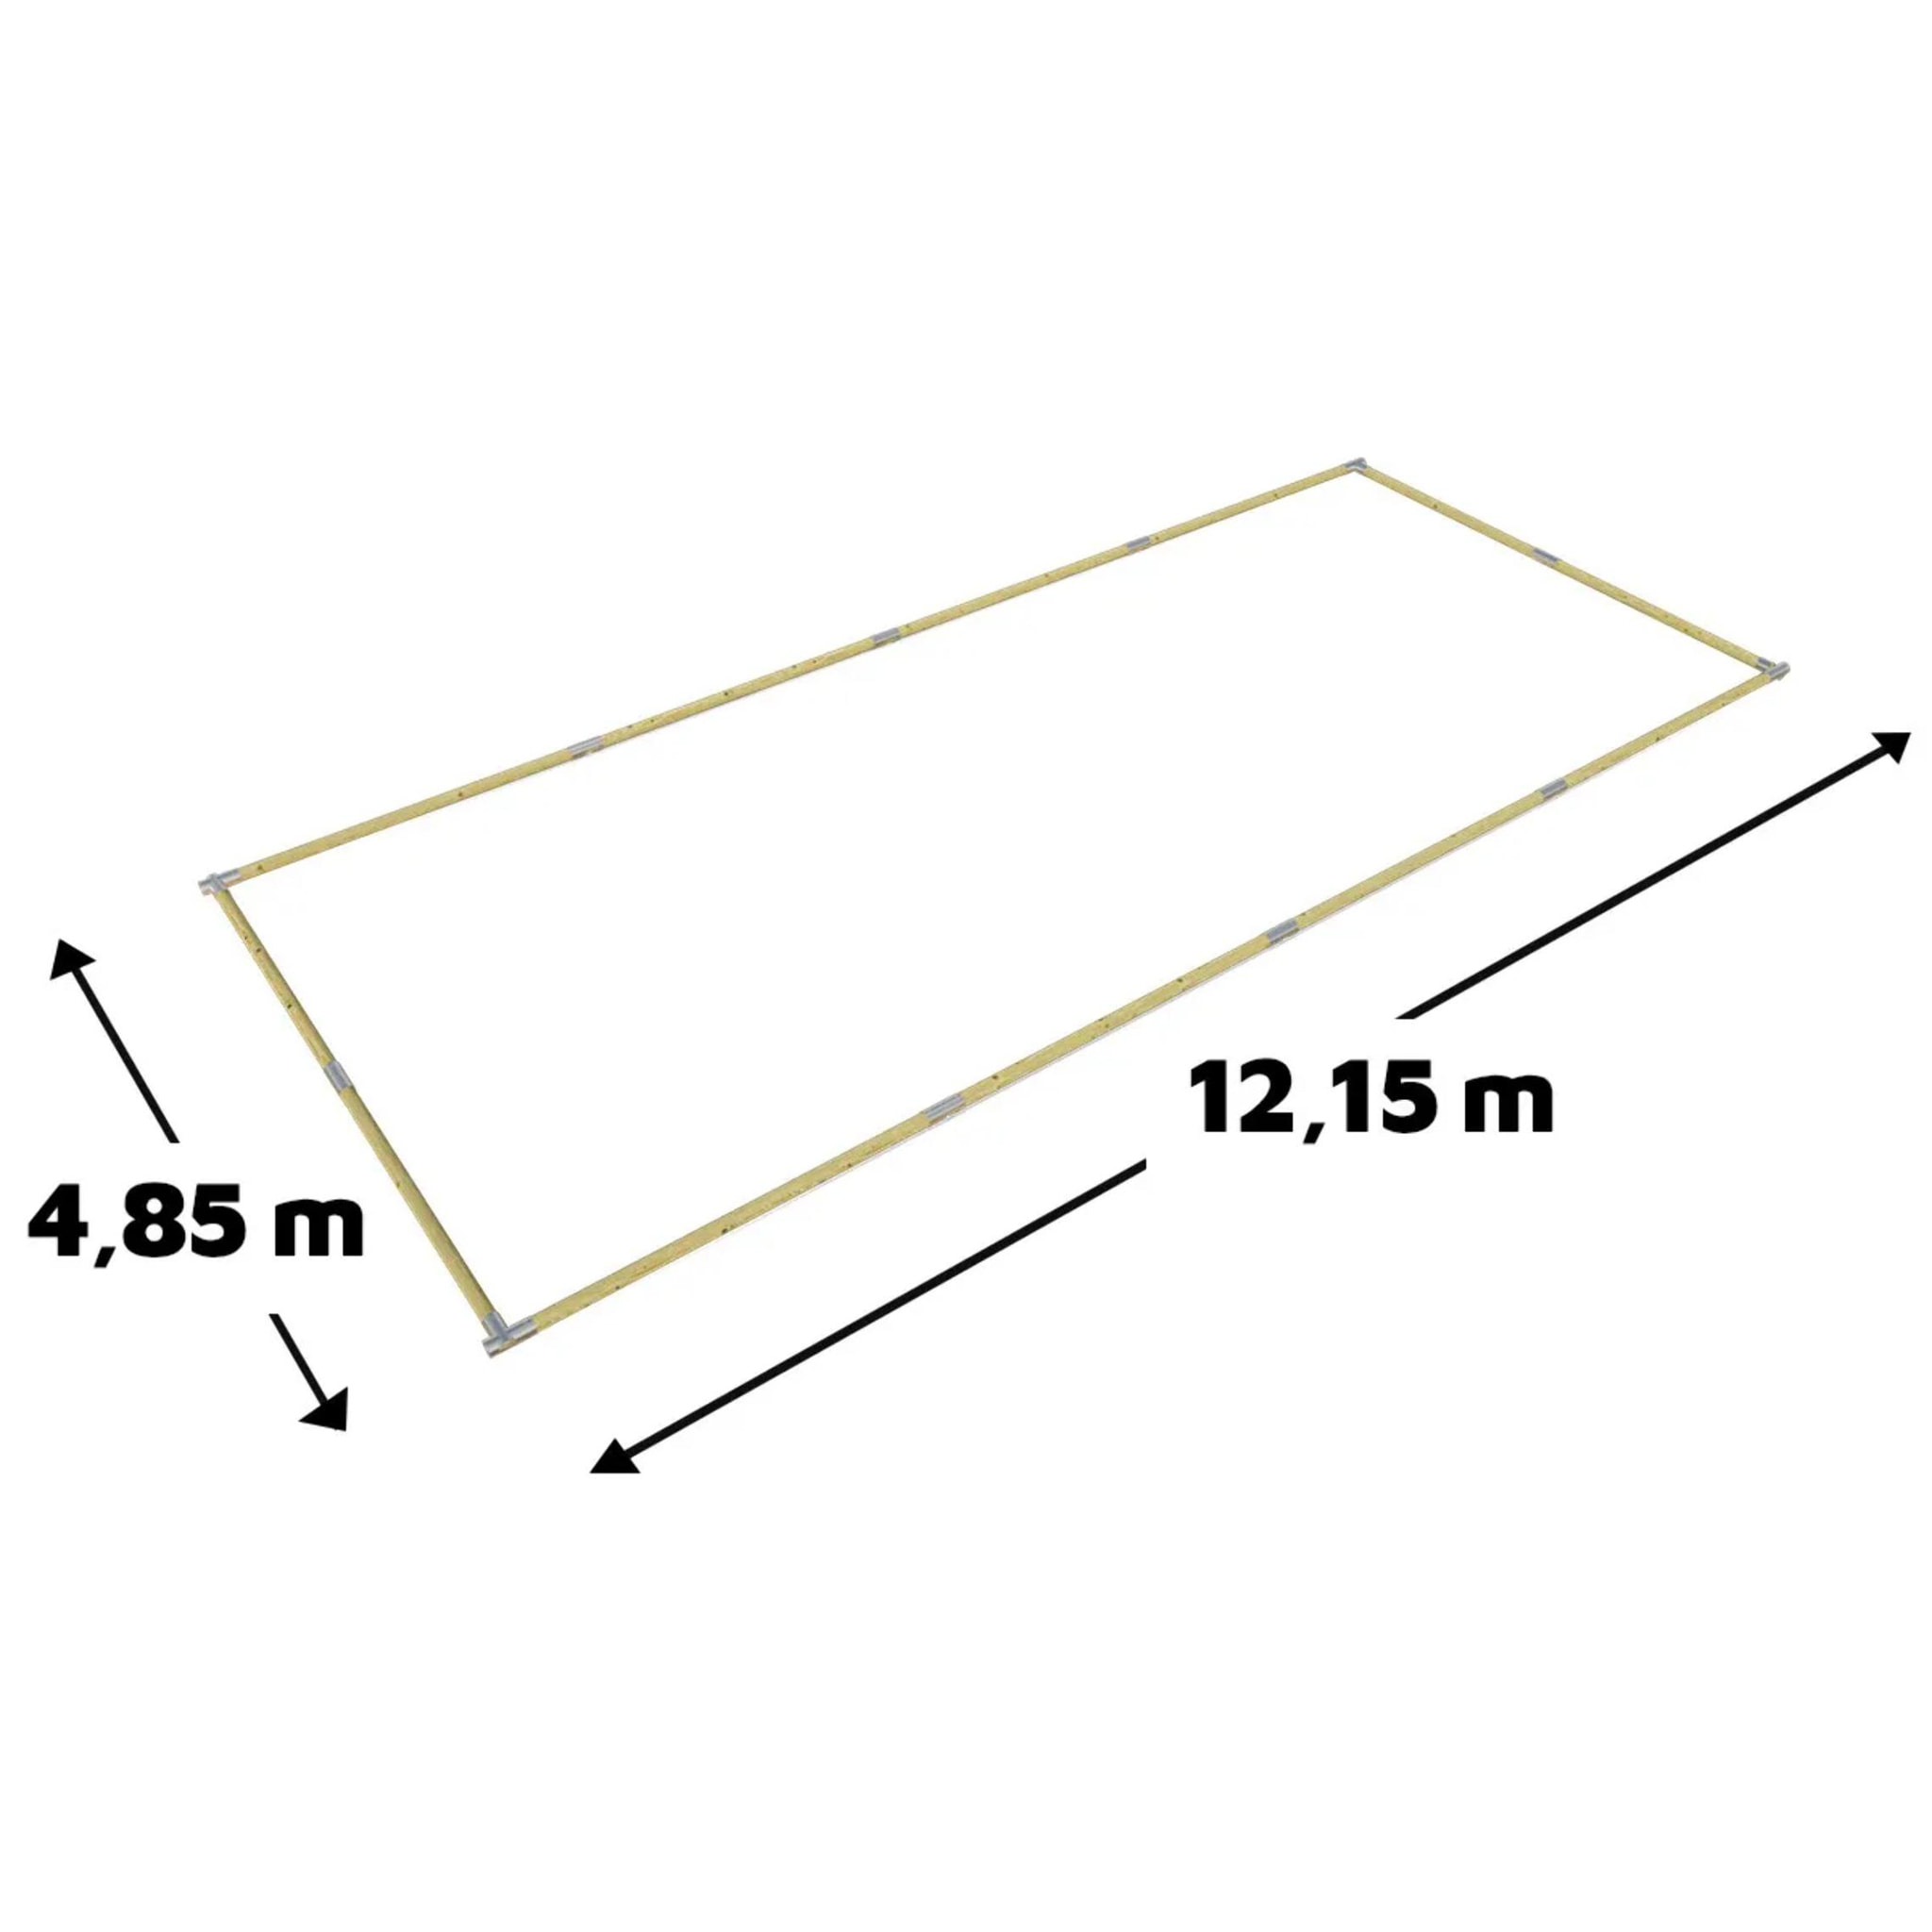 Terrain de pétanque, boulodrome en kit – 12,15 m x 4,85 m